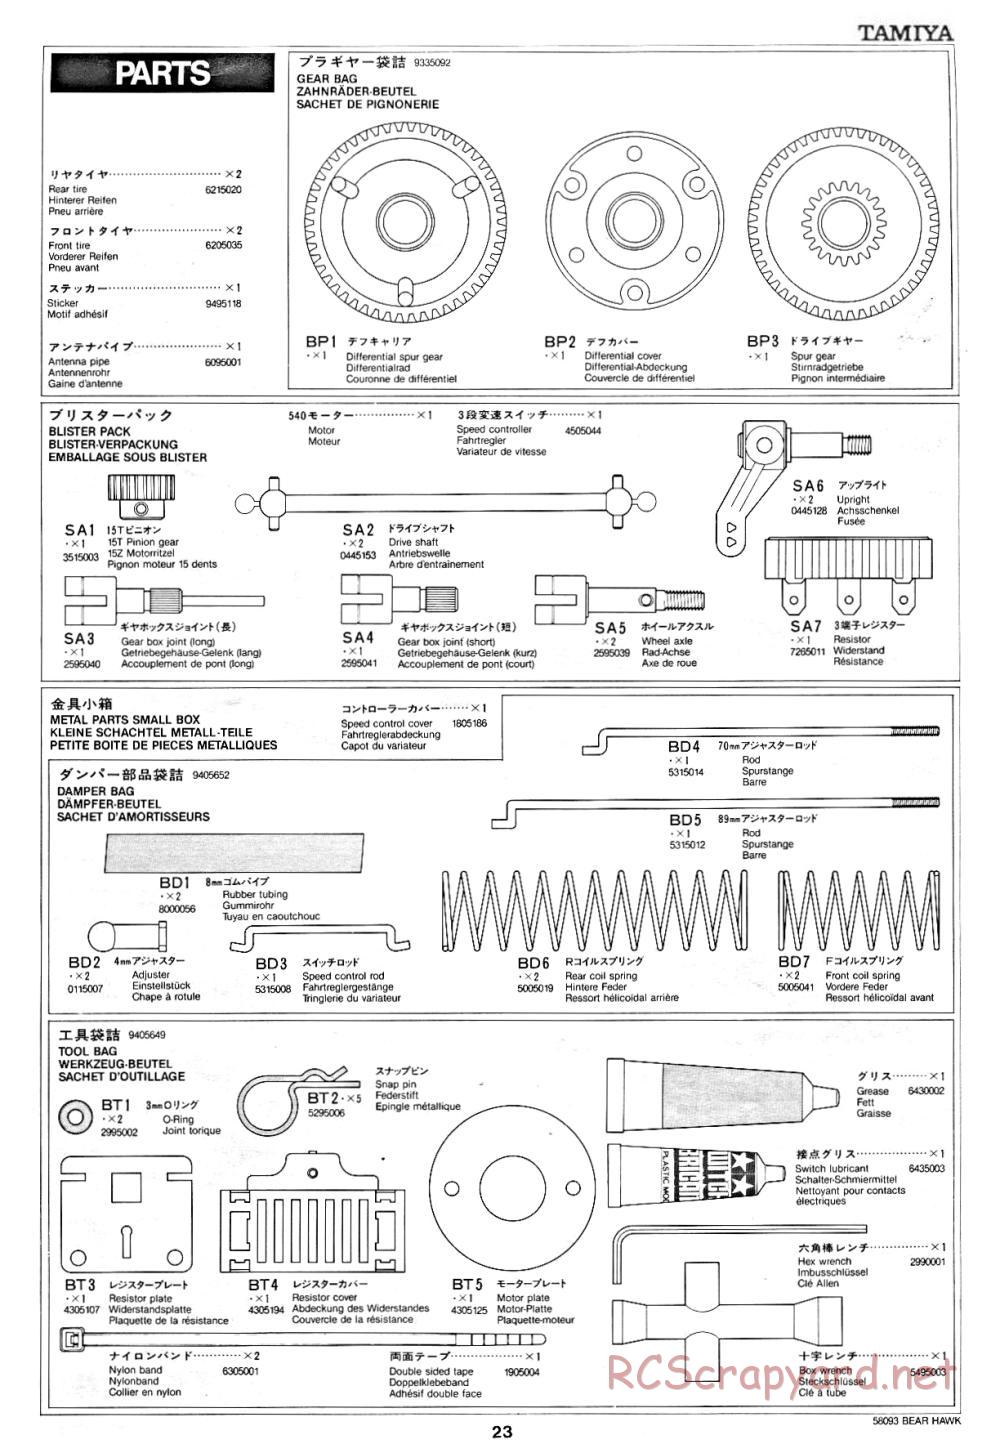 Tamiya - Bear Hawk - 58093 - Manual - Page 23